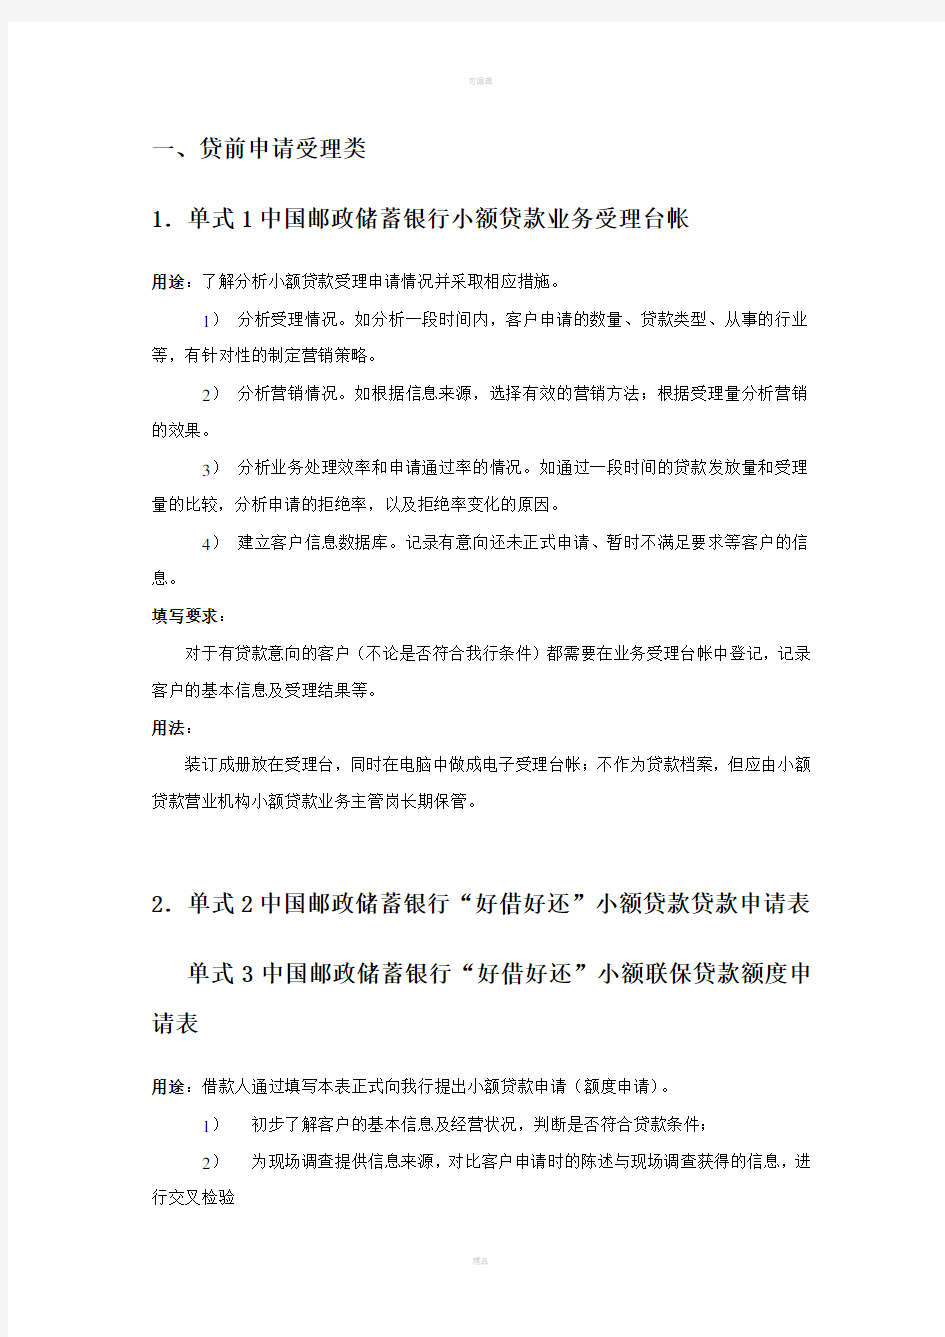 中国邮政储蓄银行小额贷款业务单式填写规范